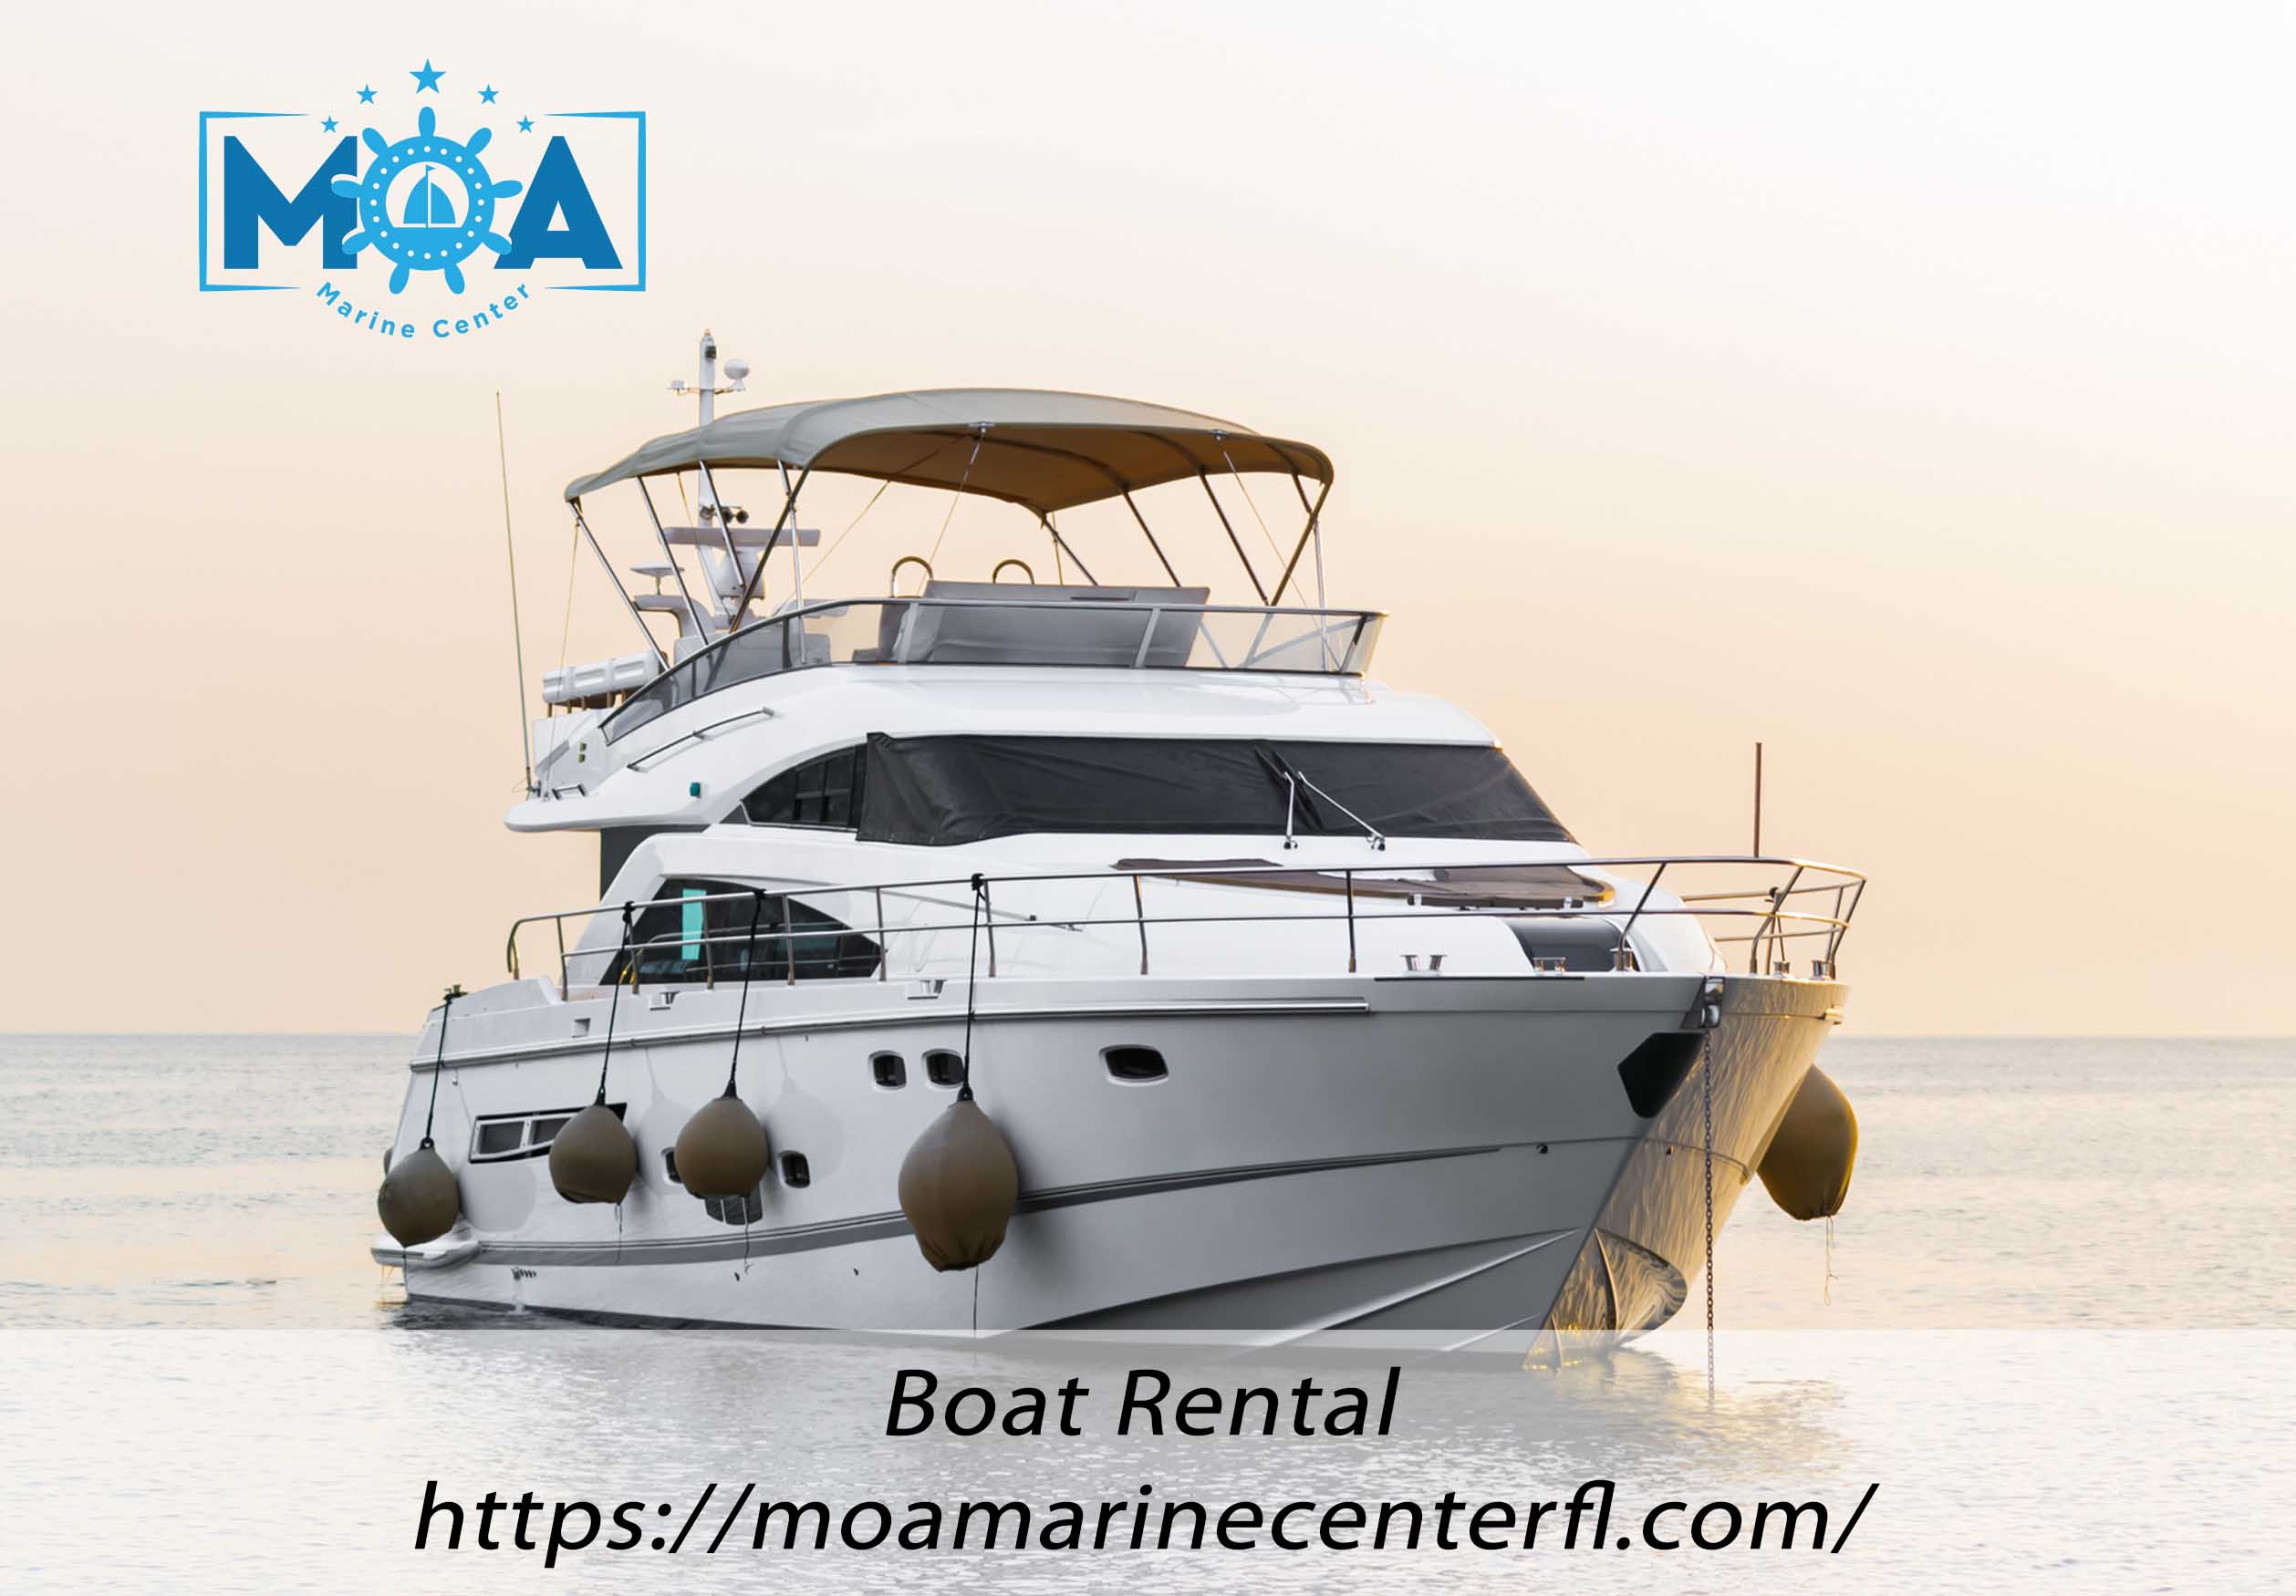 Trusted Boat Rental in Miami, FL